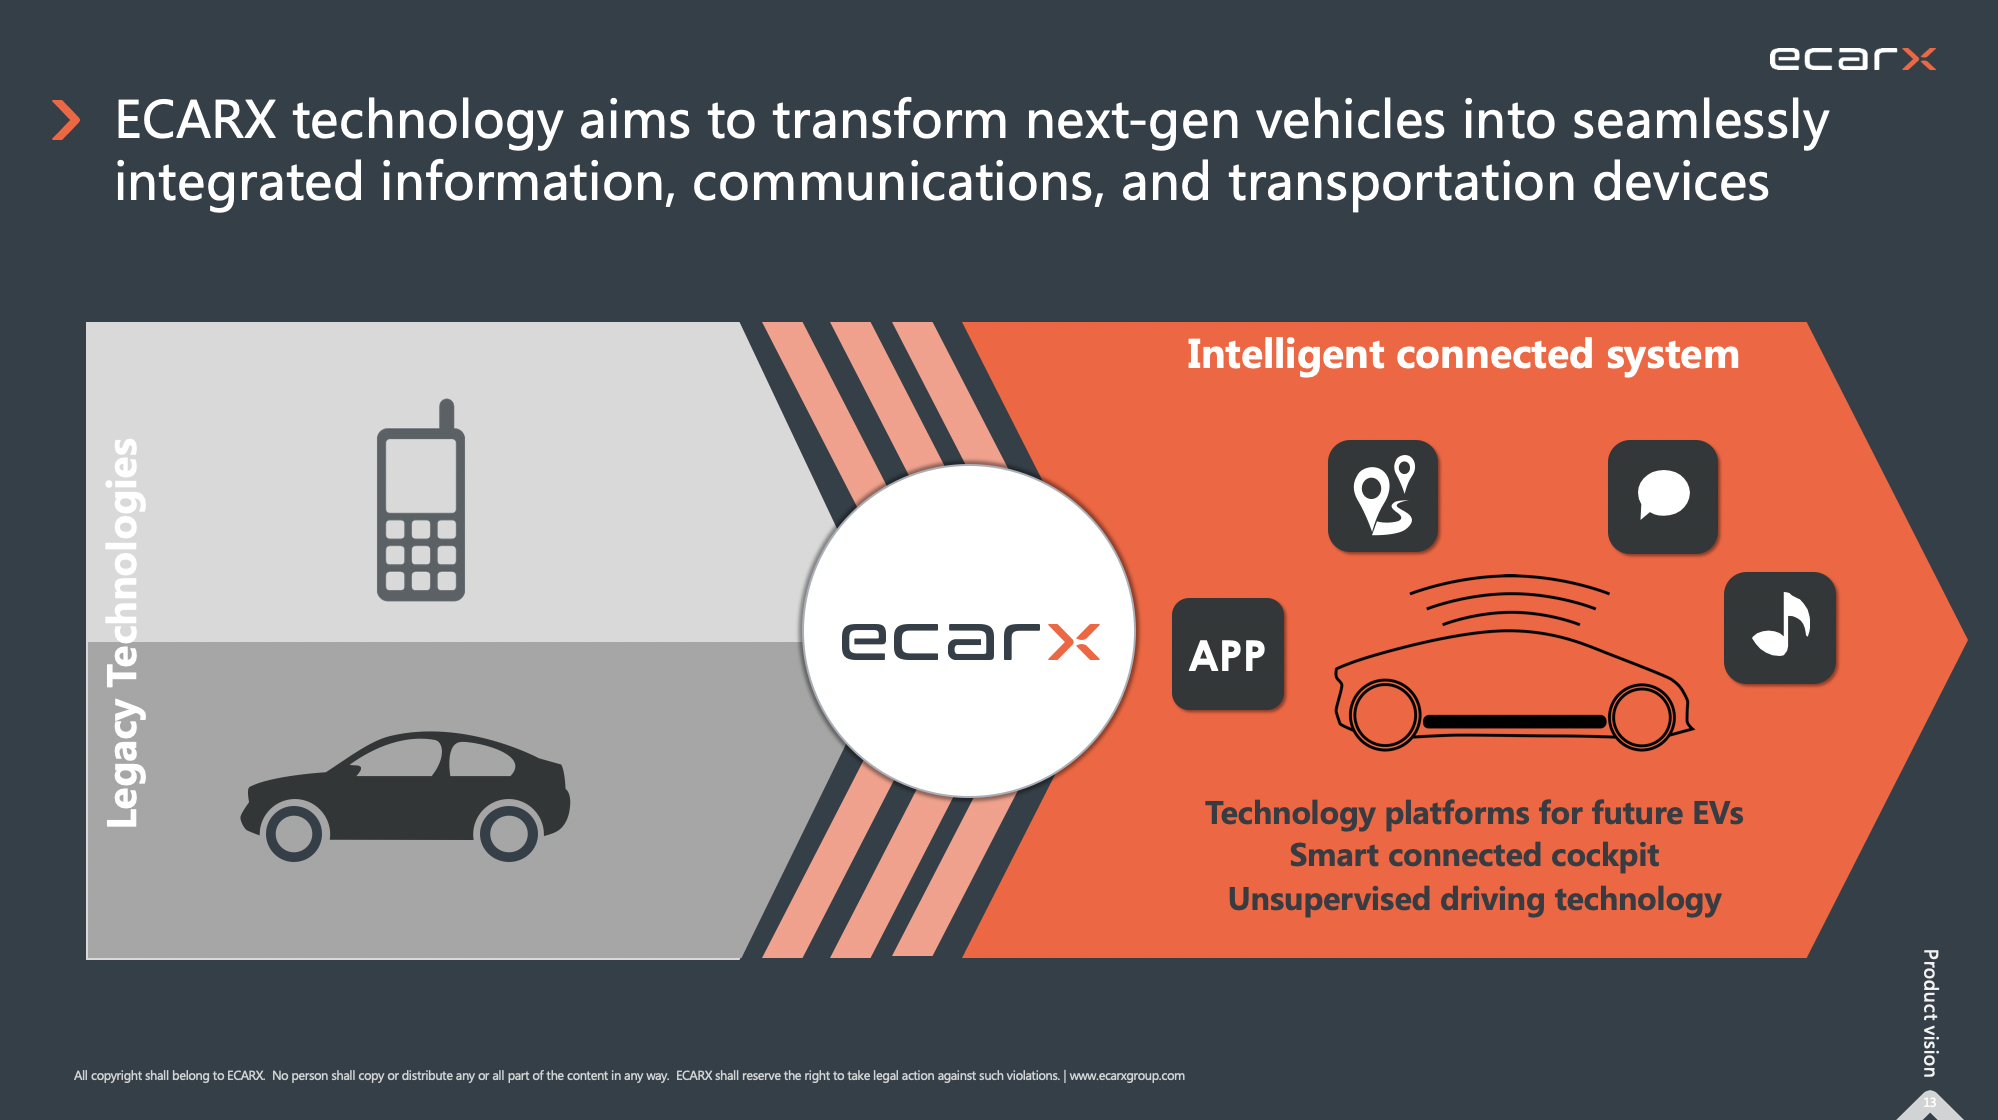 亿咖通科技致力于将下一代汽车转变为信息、通讯和交通无缝融合的智能终端